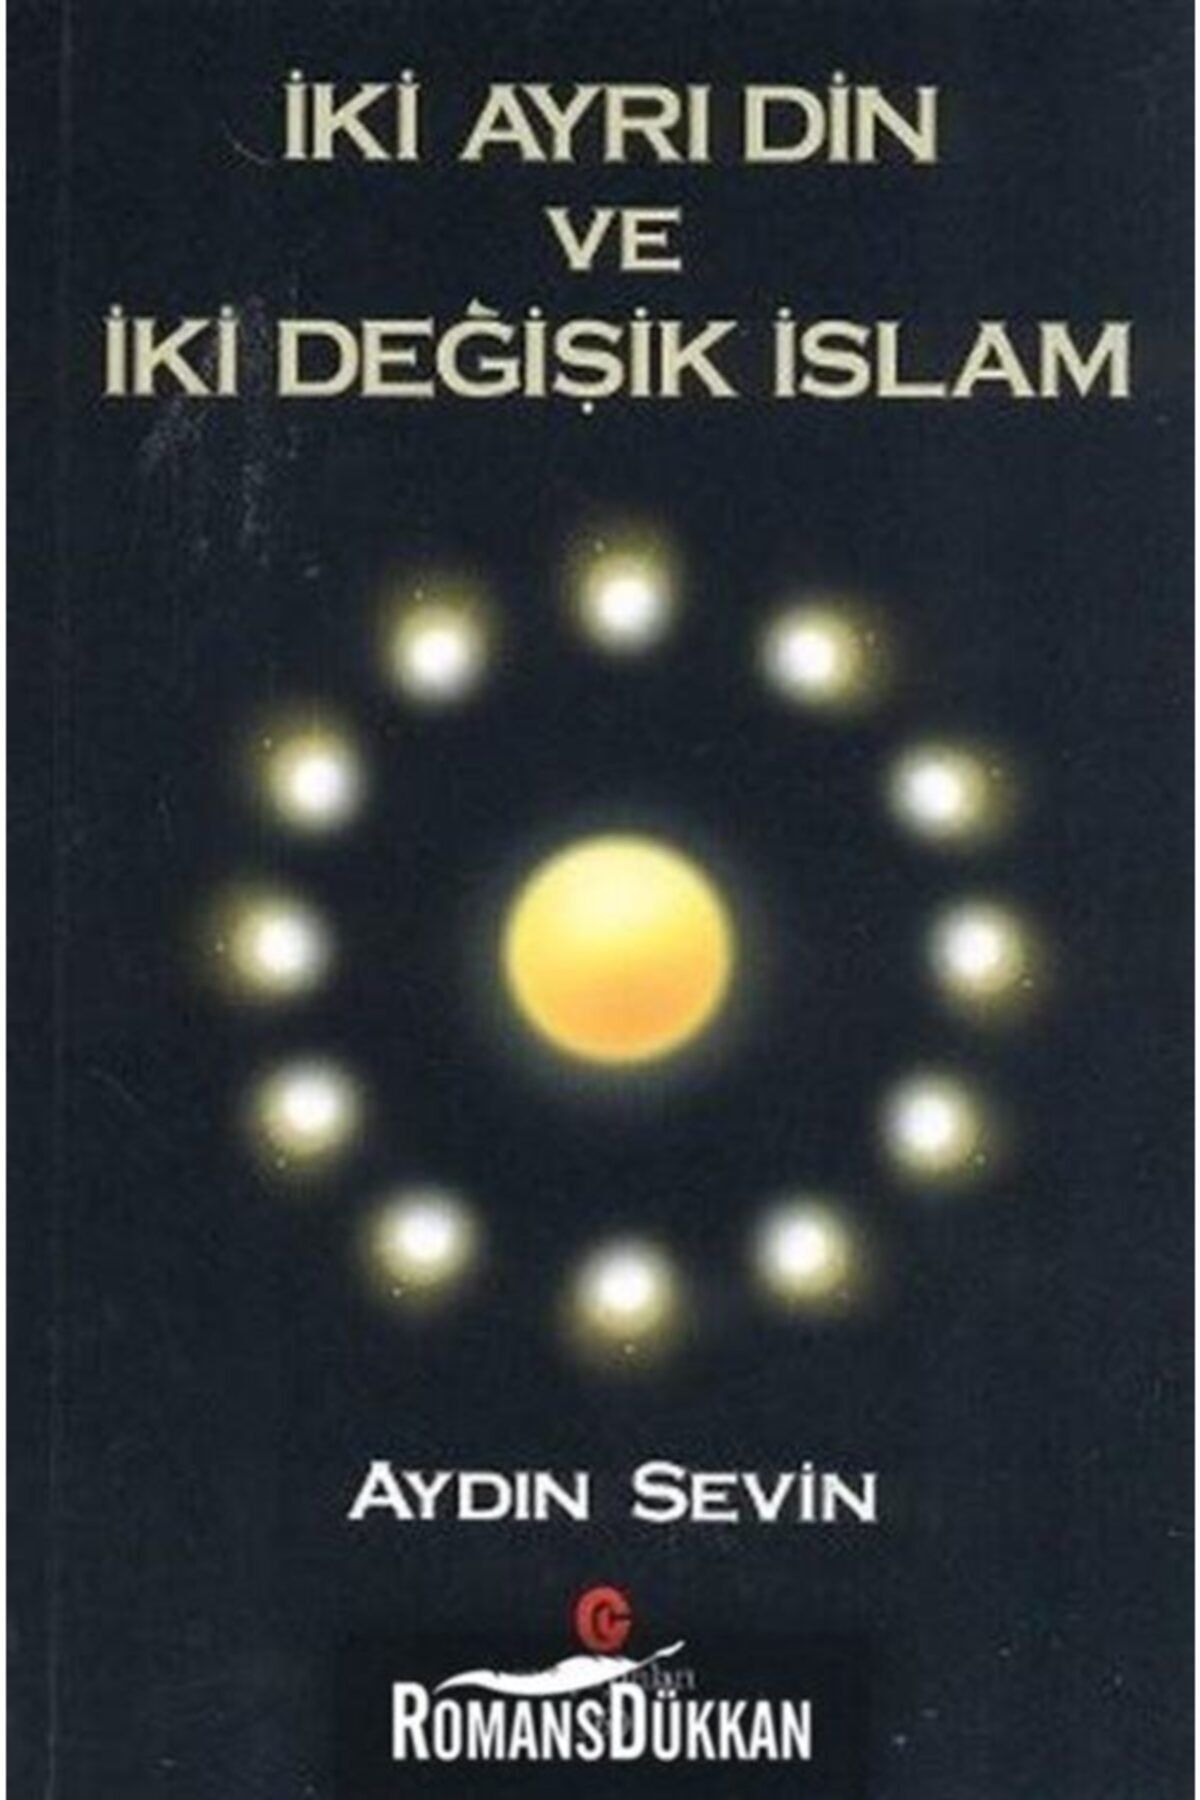 Can Yayınları Iki Ayrı Din Ve Iki Değişik Islam - Aydın Sevin